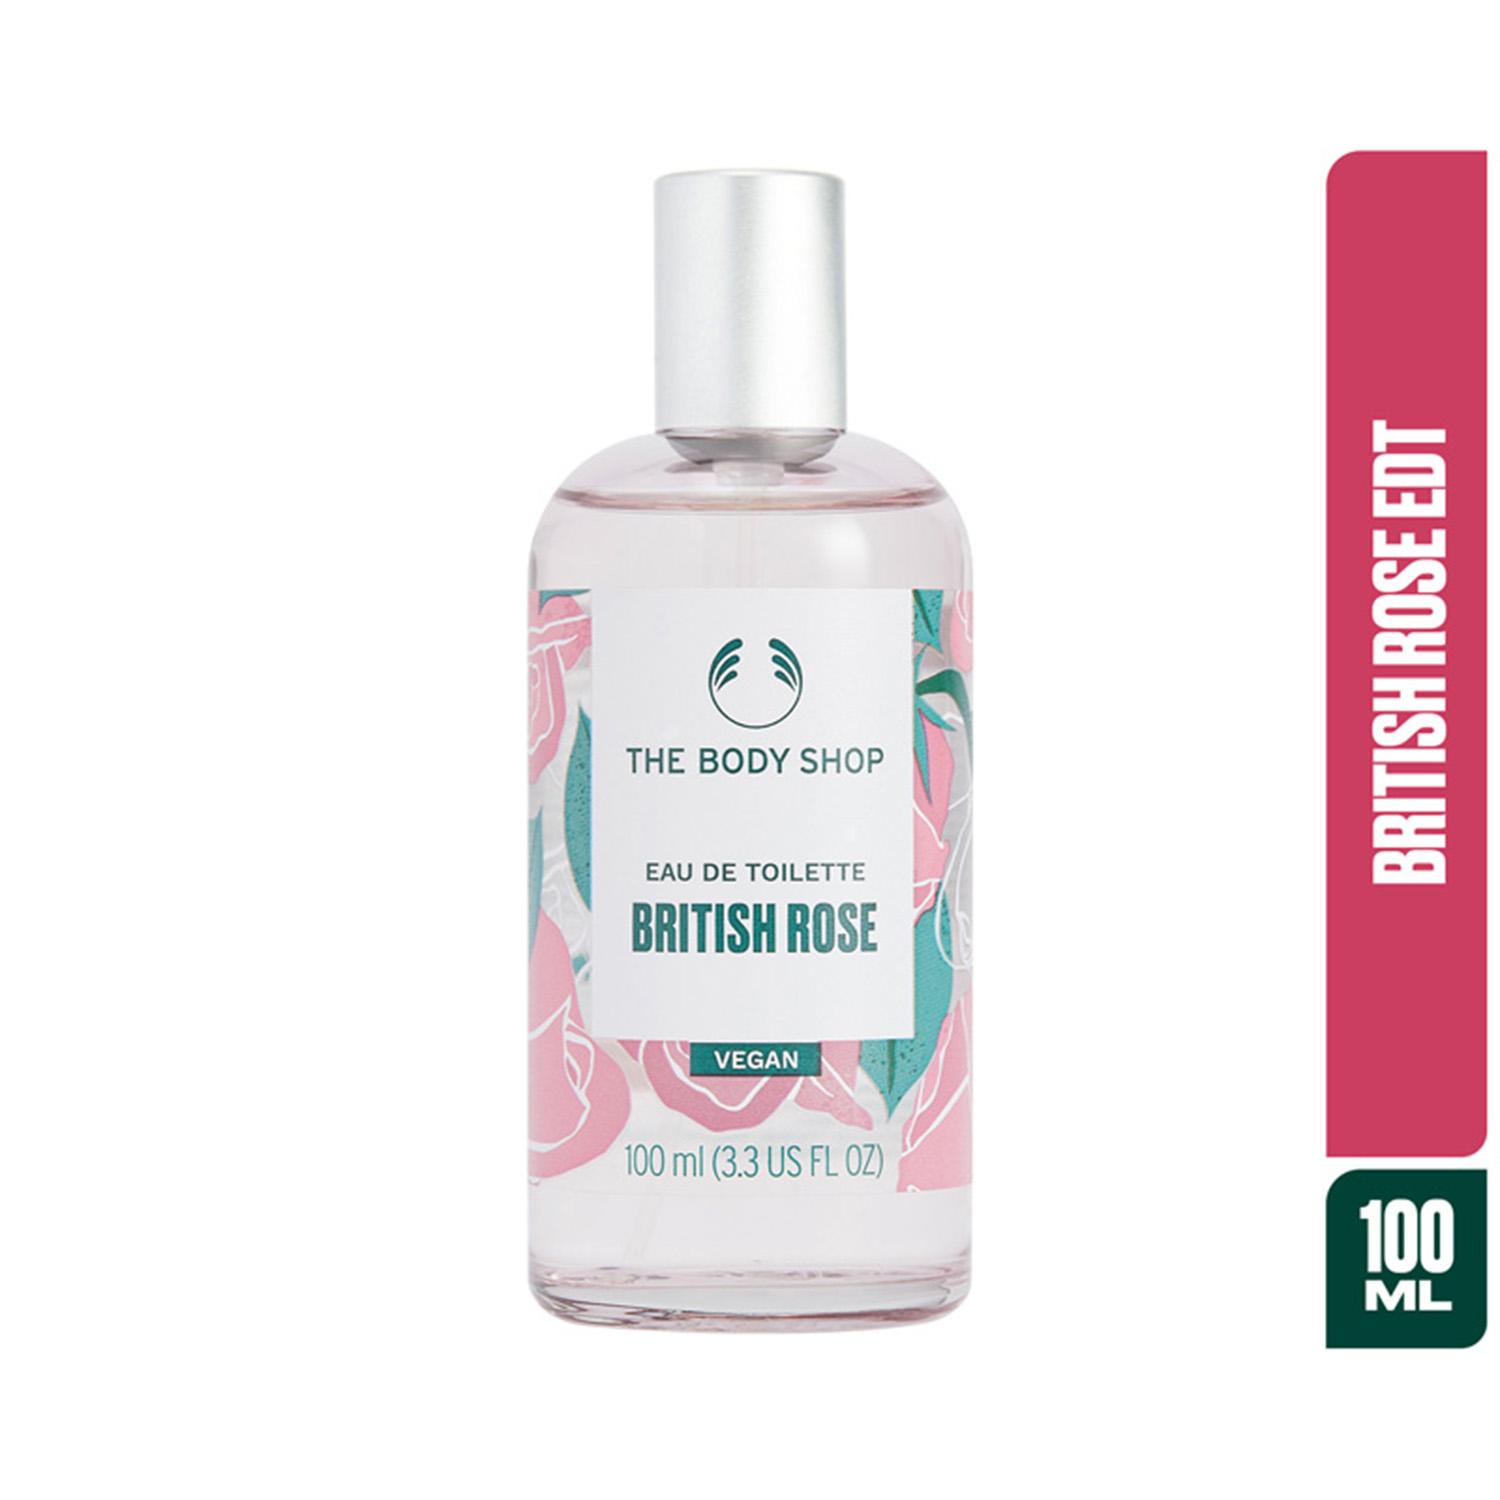 The Body Shop | The Body Shop British Rose Eau De Toilette (100ml)